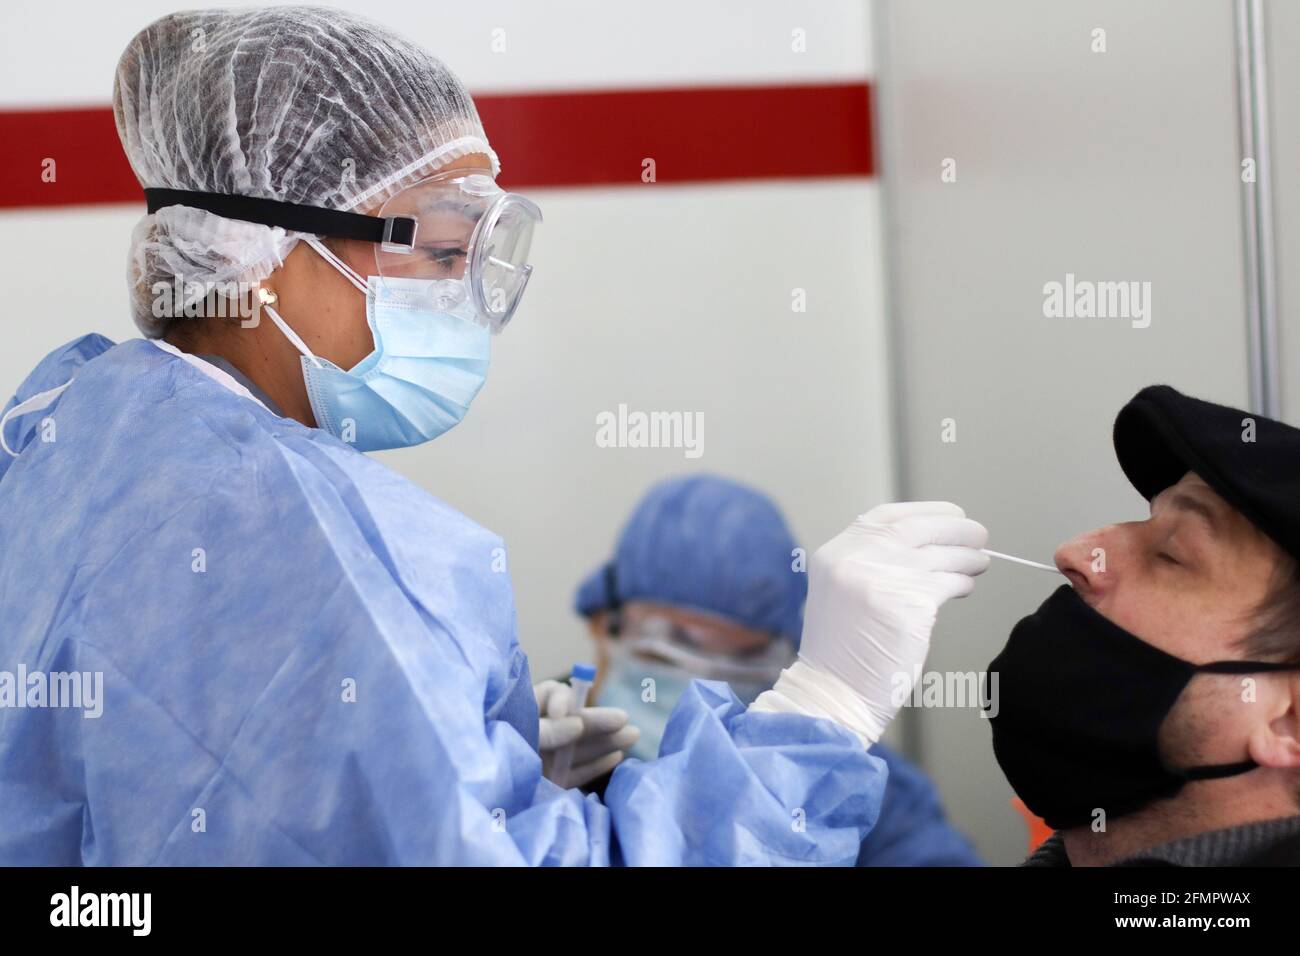 BUENOS AIRES, 11.05.2021: Gli infermieri eseguono il tampone per i test di Coronavirus in un centro Detectar nel contesto della seconda ondata di infezioni. Foto Stock